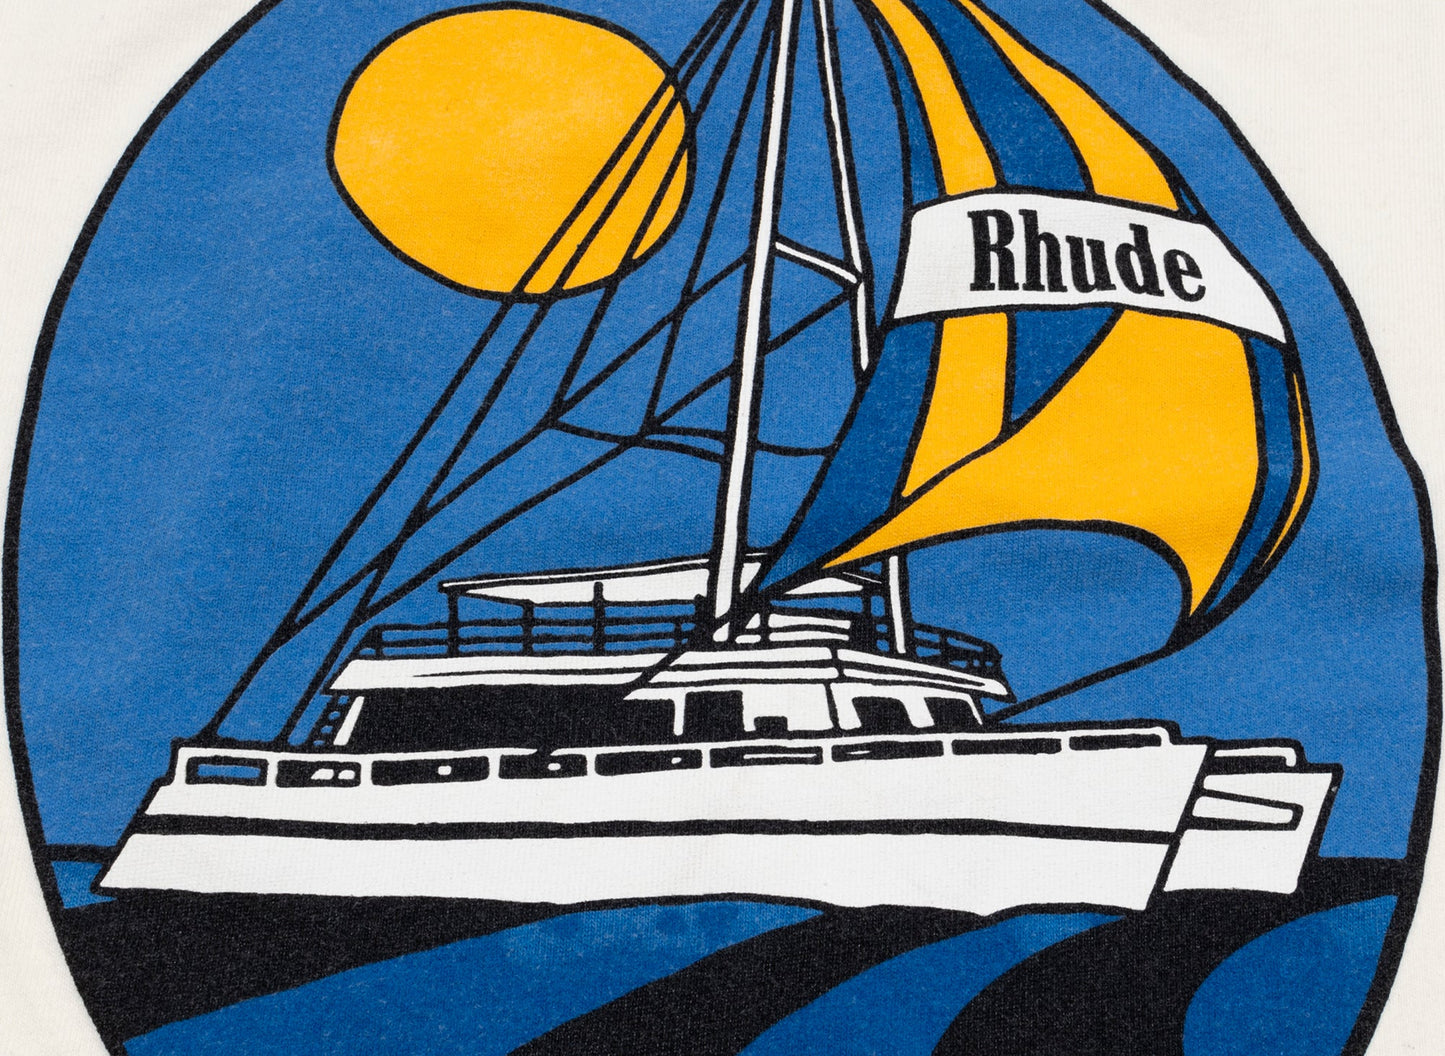 Rhude Yacht Club Tee xld